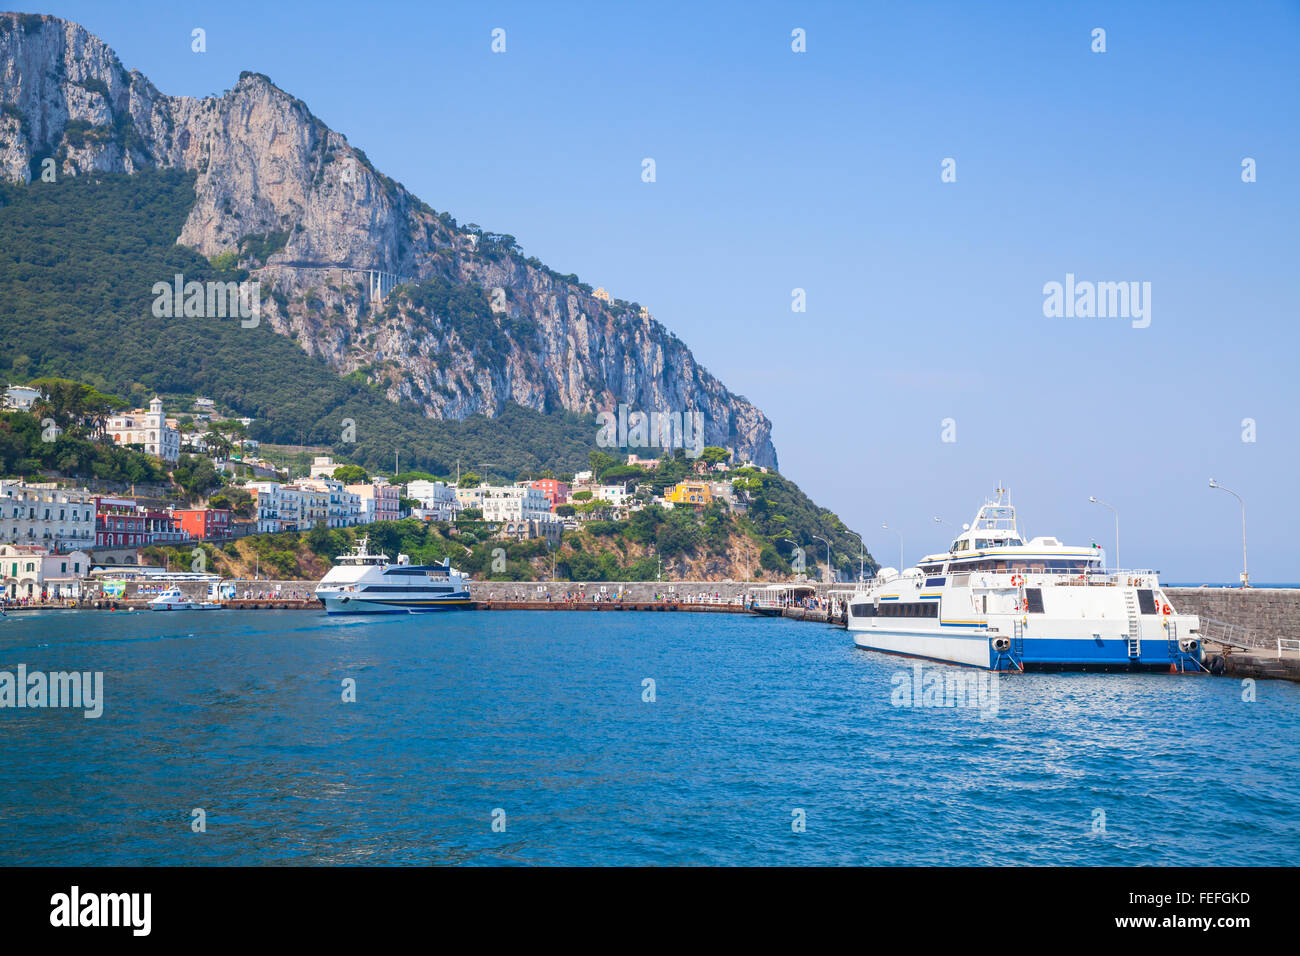 Porto principale dell'isola di Capri, Italia. Passeggeri delle navi ormeggiate in porto Foto Stock